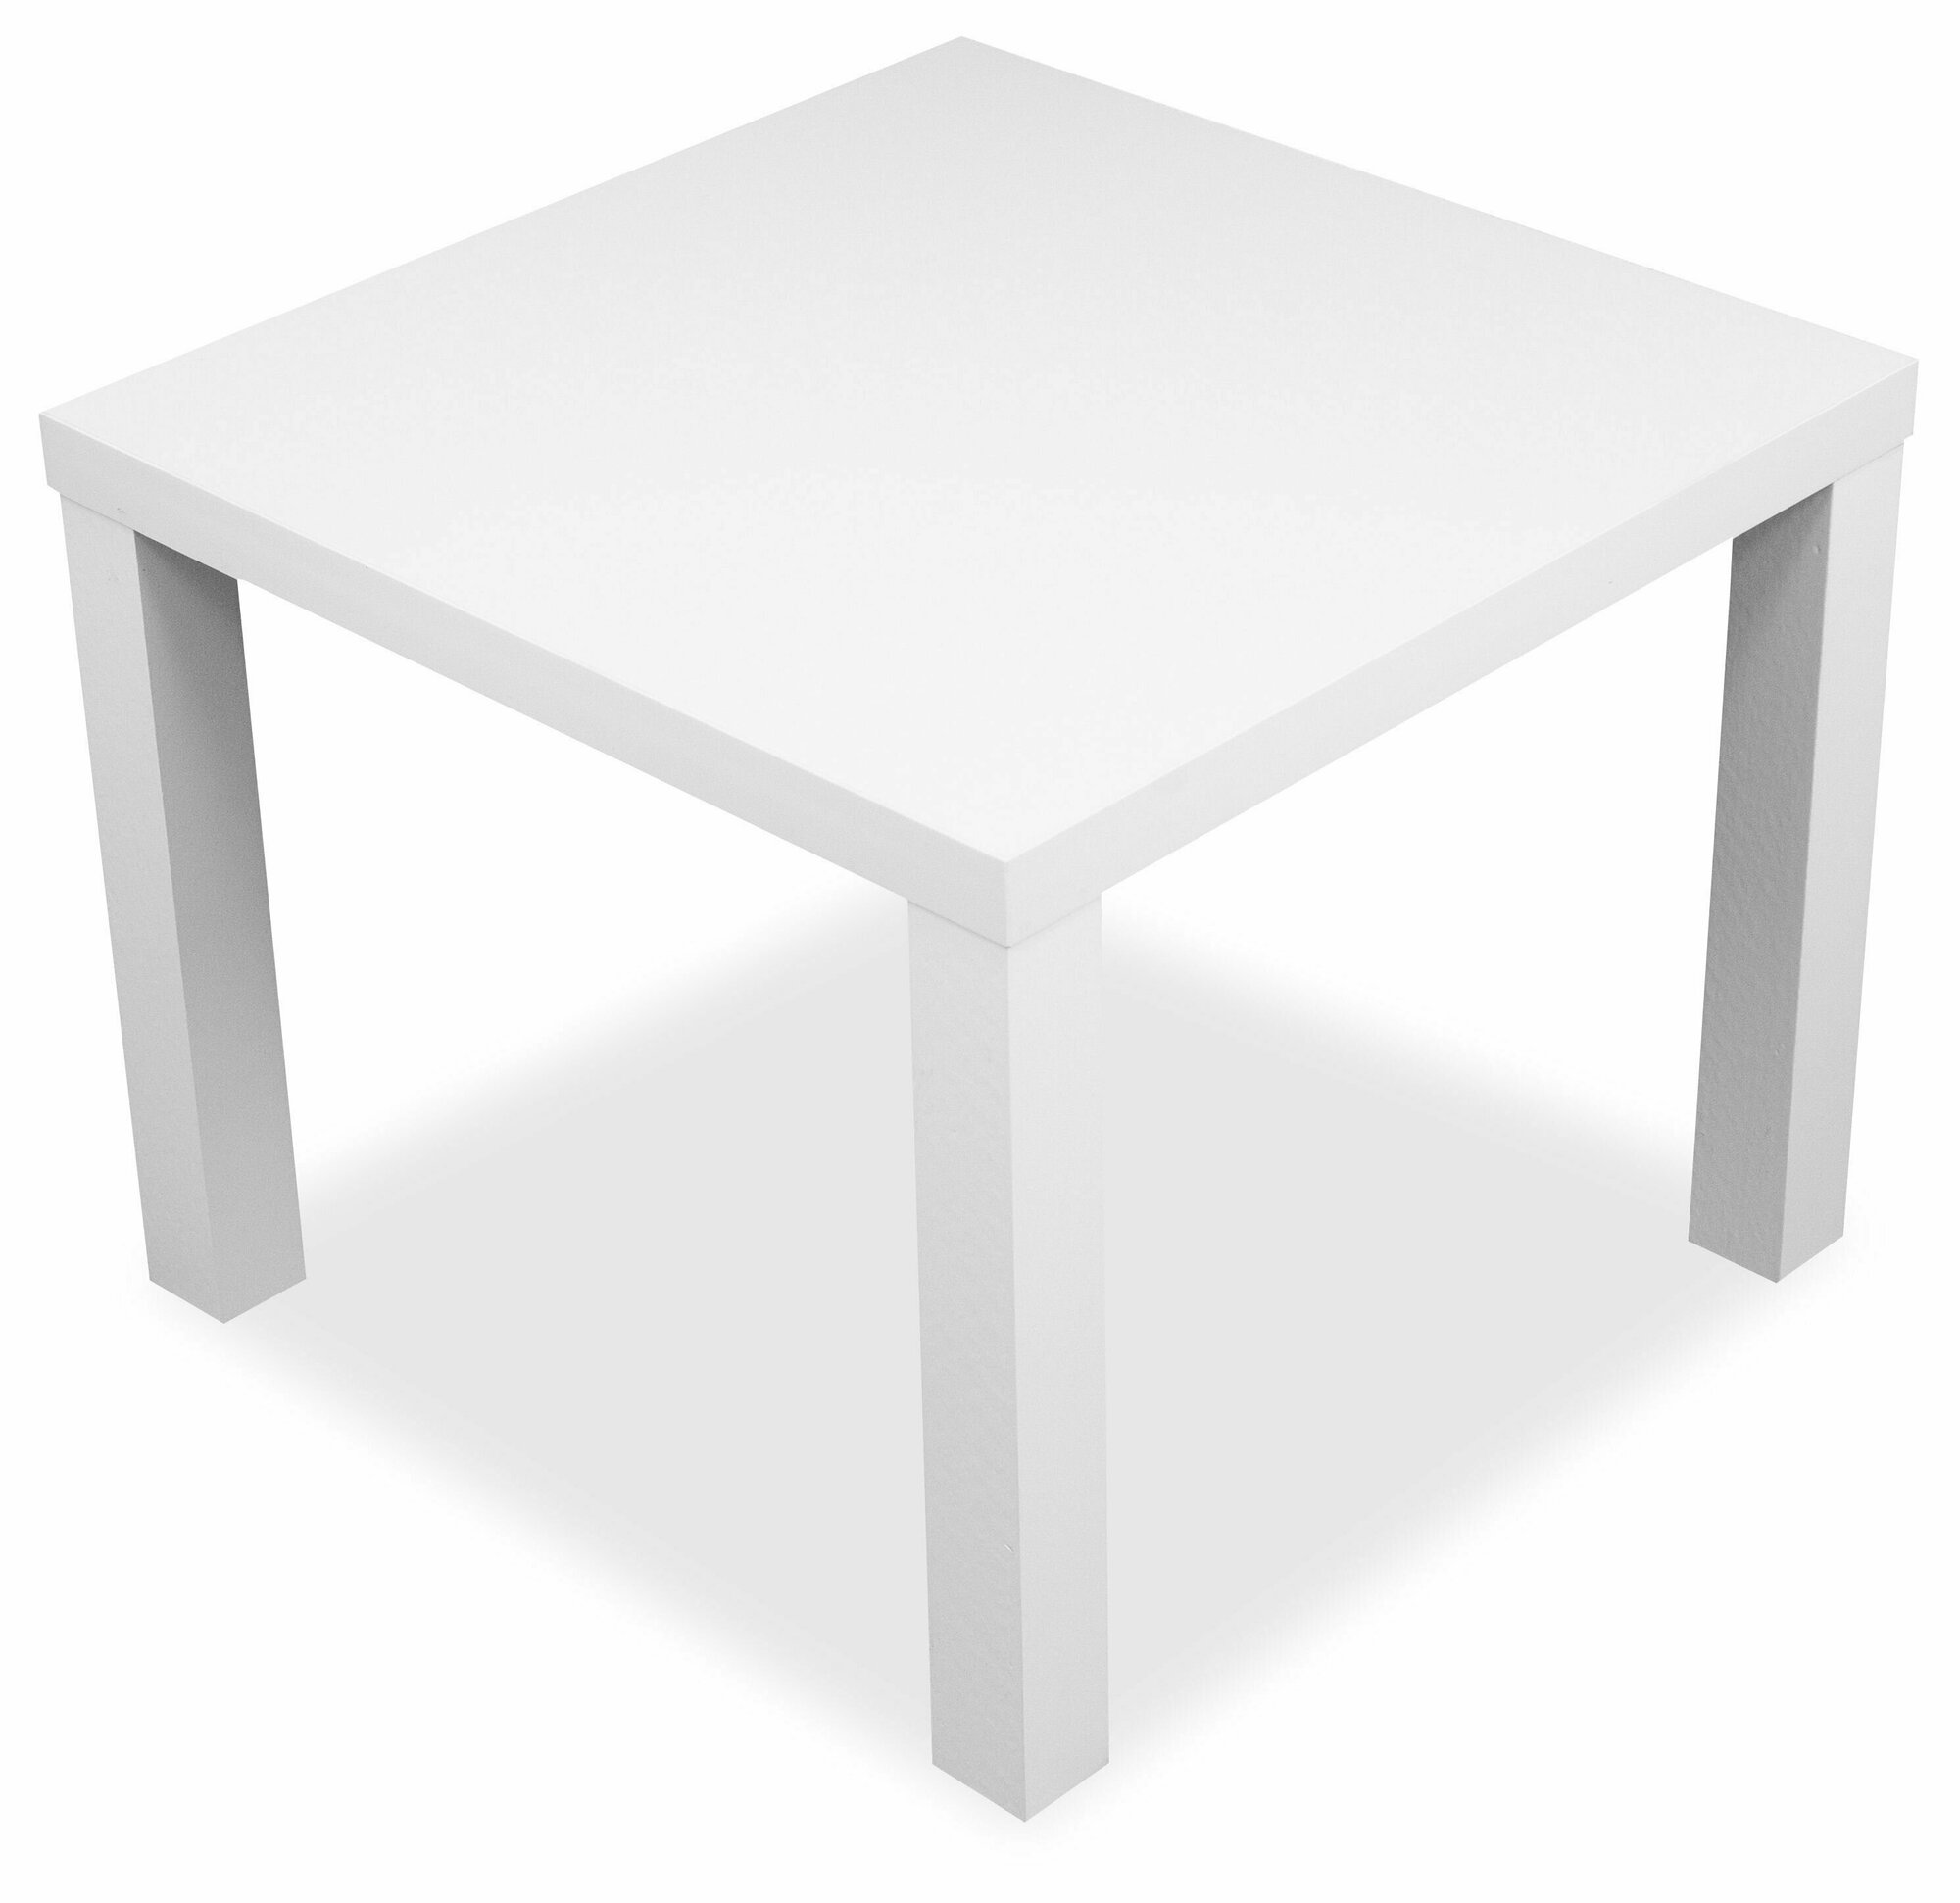 Столик журнальный квадратный Hesby Elegant Simplicity для дома и офиса. Размер: 55х55х42см. Цвет: белый